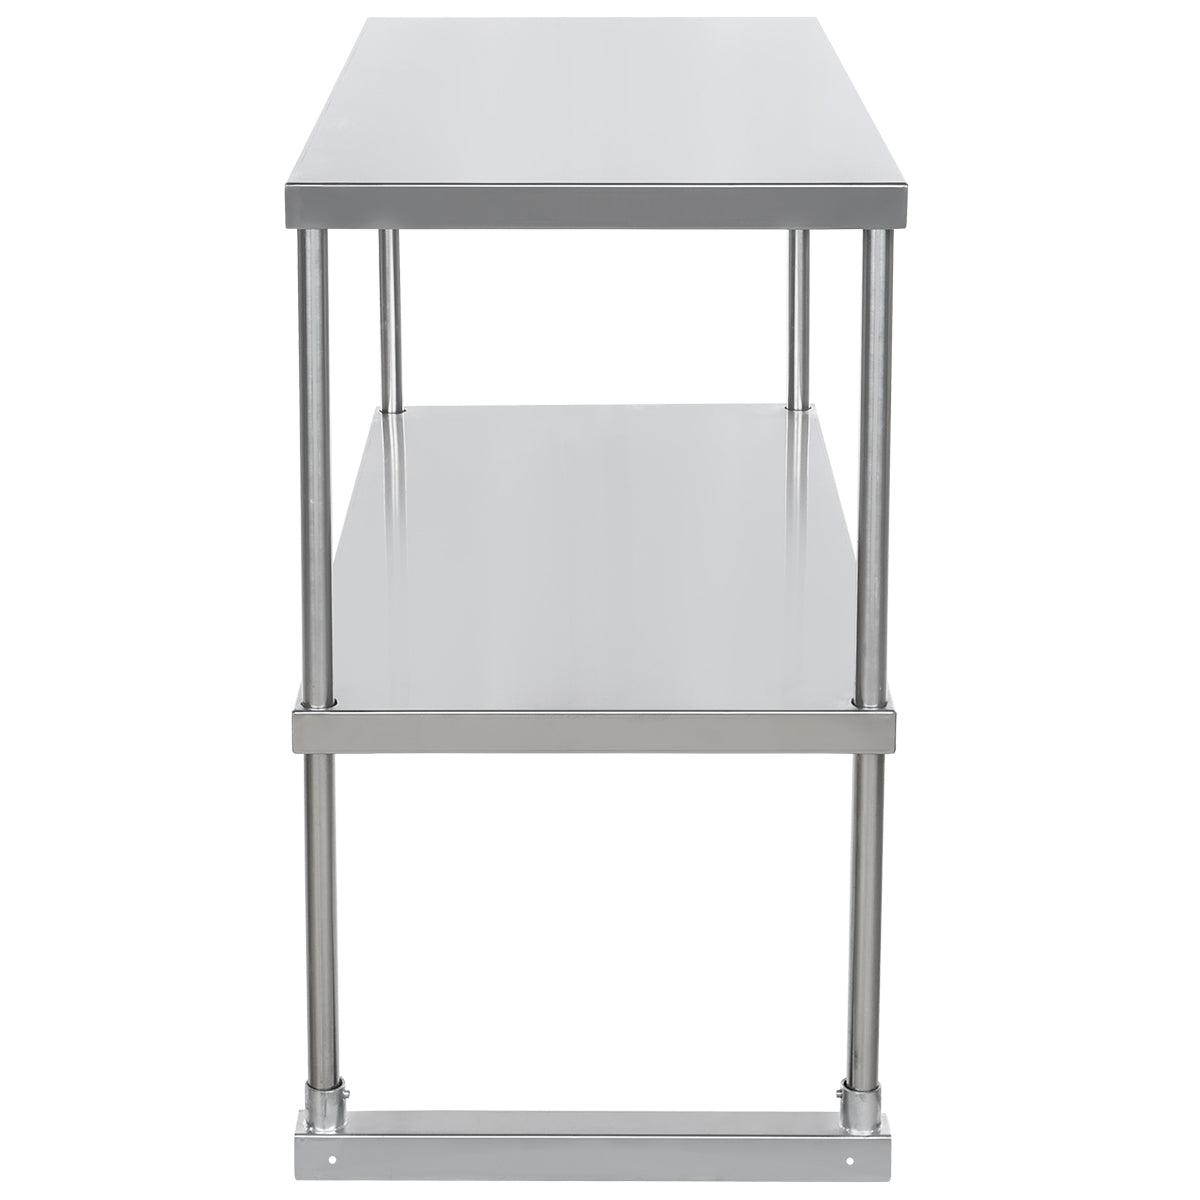 Empura EDOS1836 Overshelf Table-mounted Standard